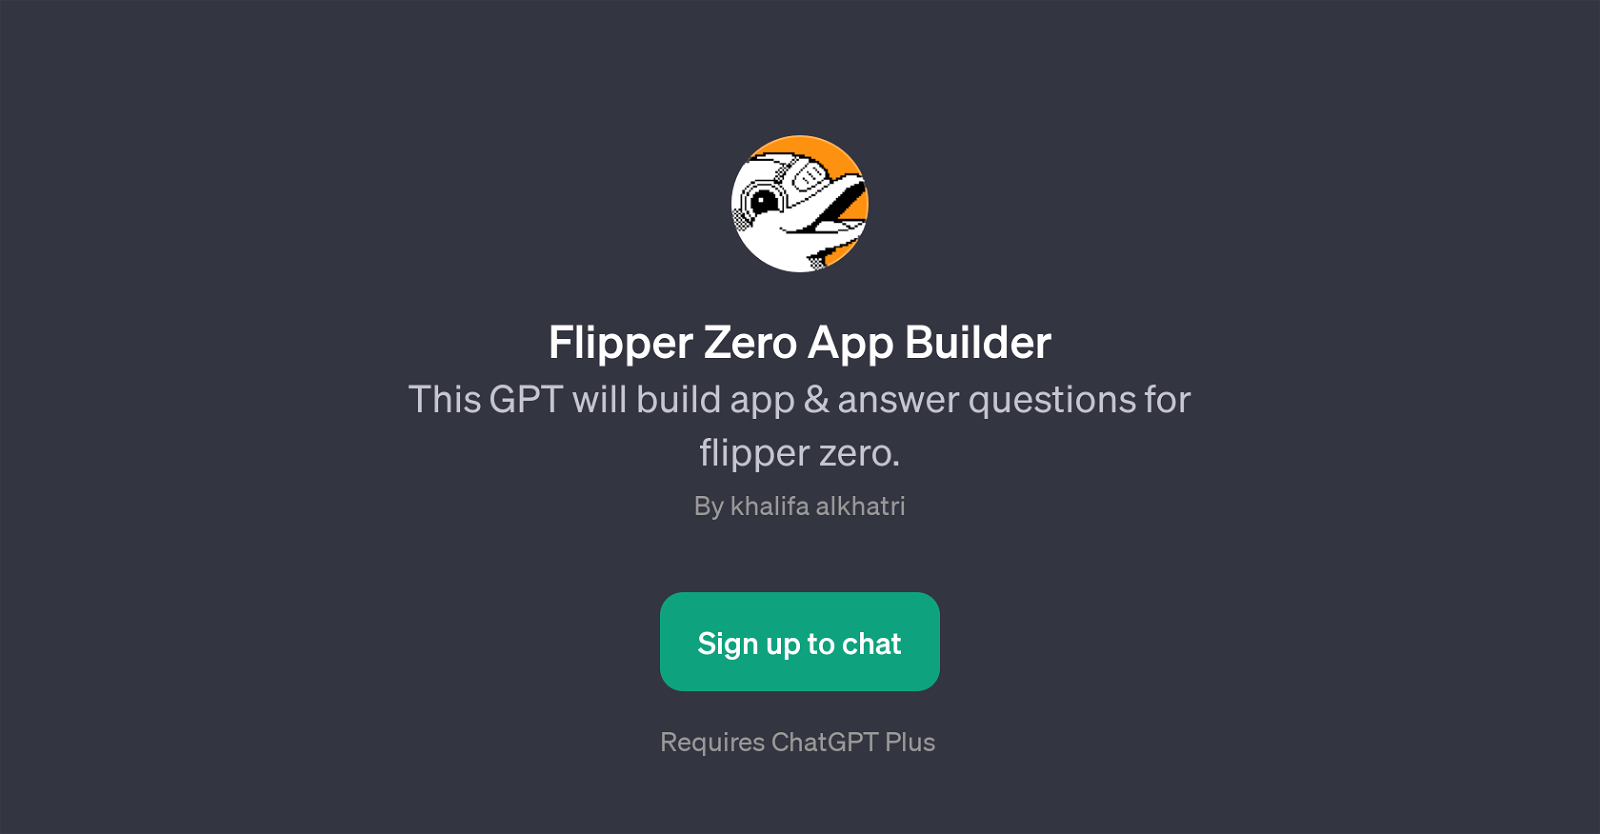 Flipper Zero App Builder website